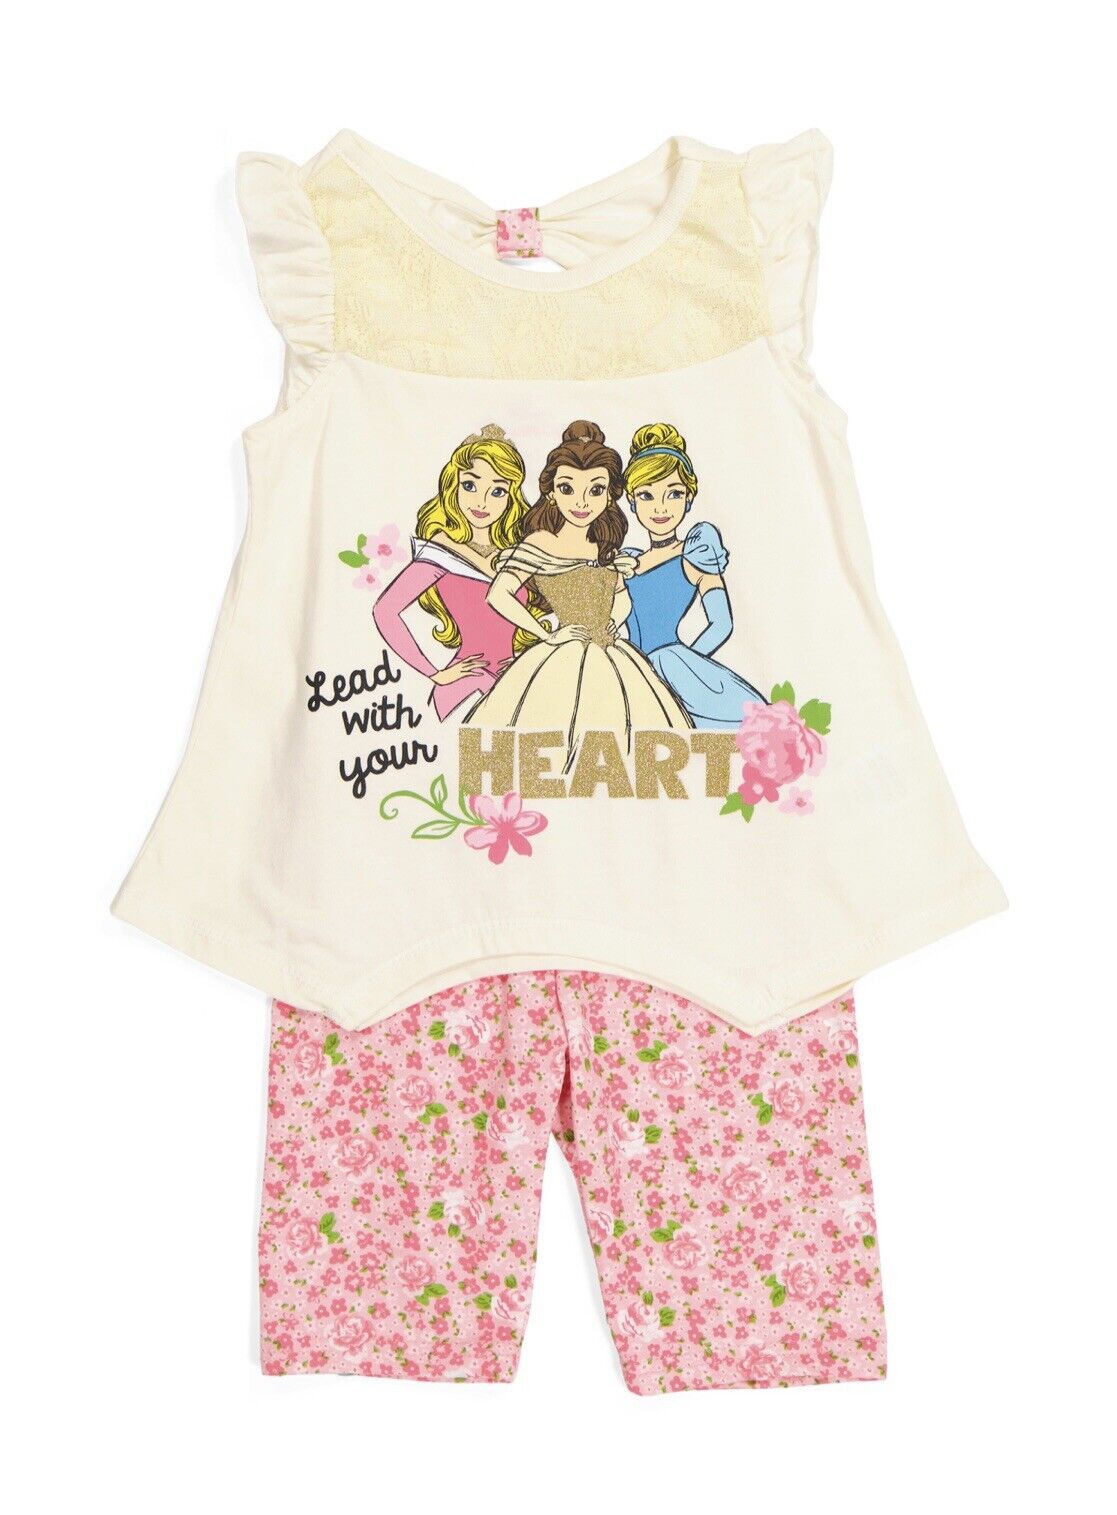 NWT Girls Disney Princess Aurora 5 popular Belle Tank Short top Factory outlet Shirt tee